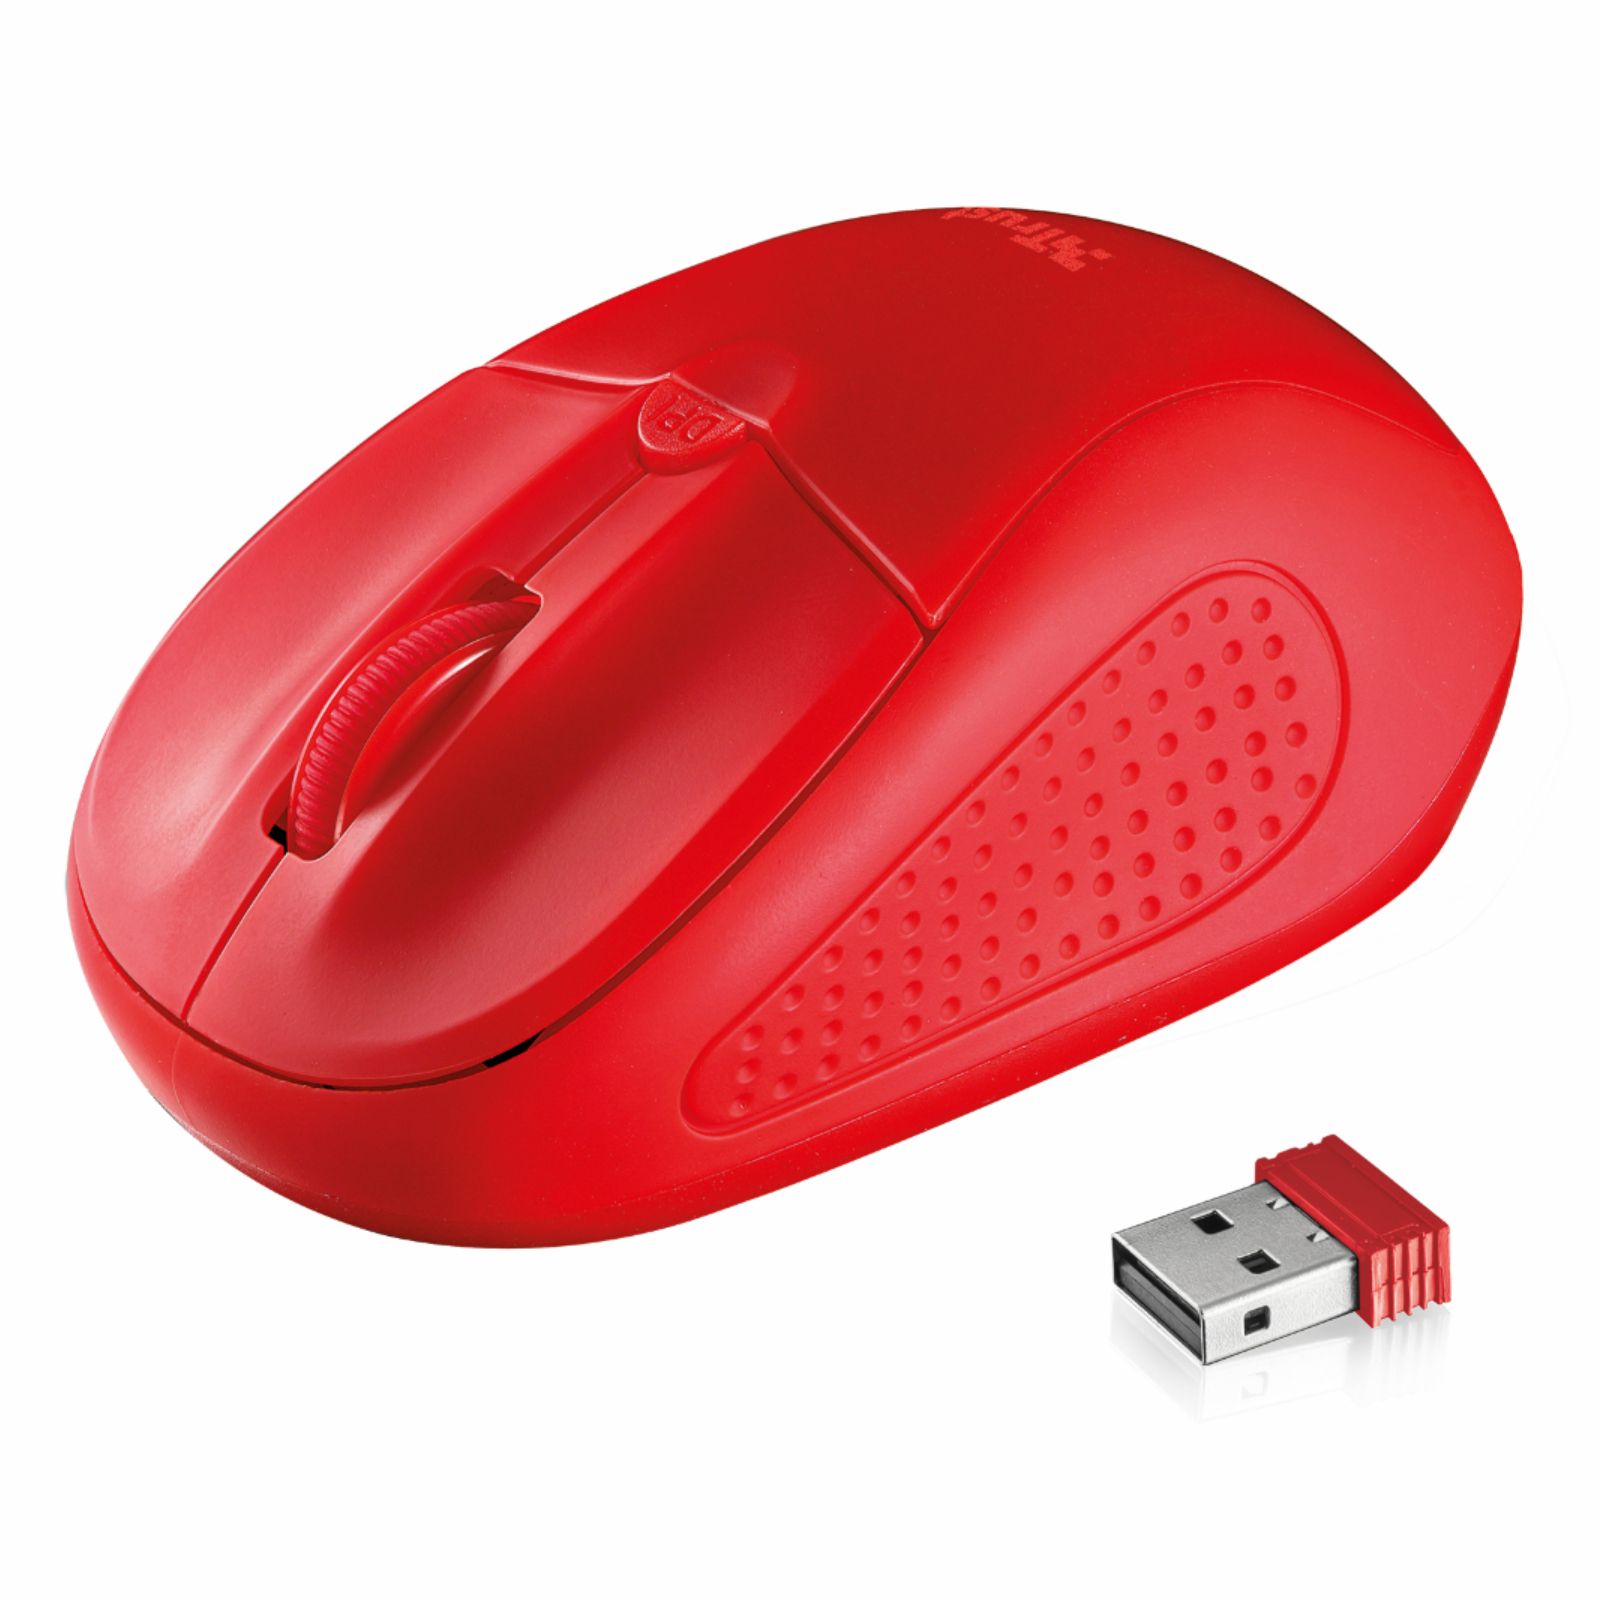 Какая беспроводная мышь лучше. Мышь Trust Wireless Mouse. Мышь Trust sula Wireless Mouse Red USB. Беспроводная мышь Genius NX-7015. Беспроводная мышь, Faison, m-6, Alien.